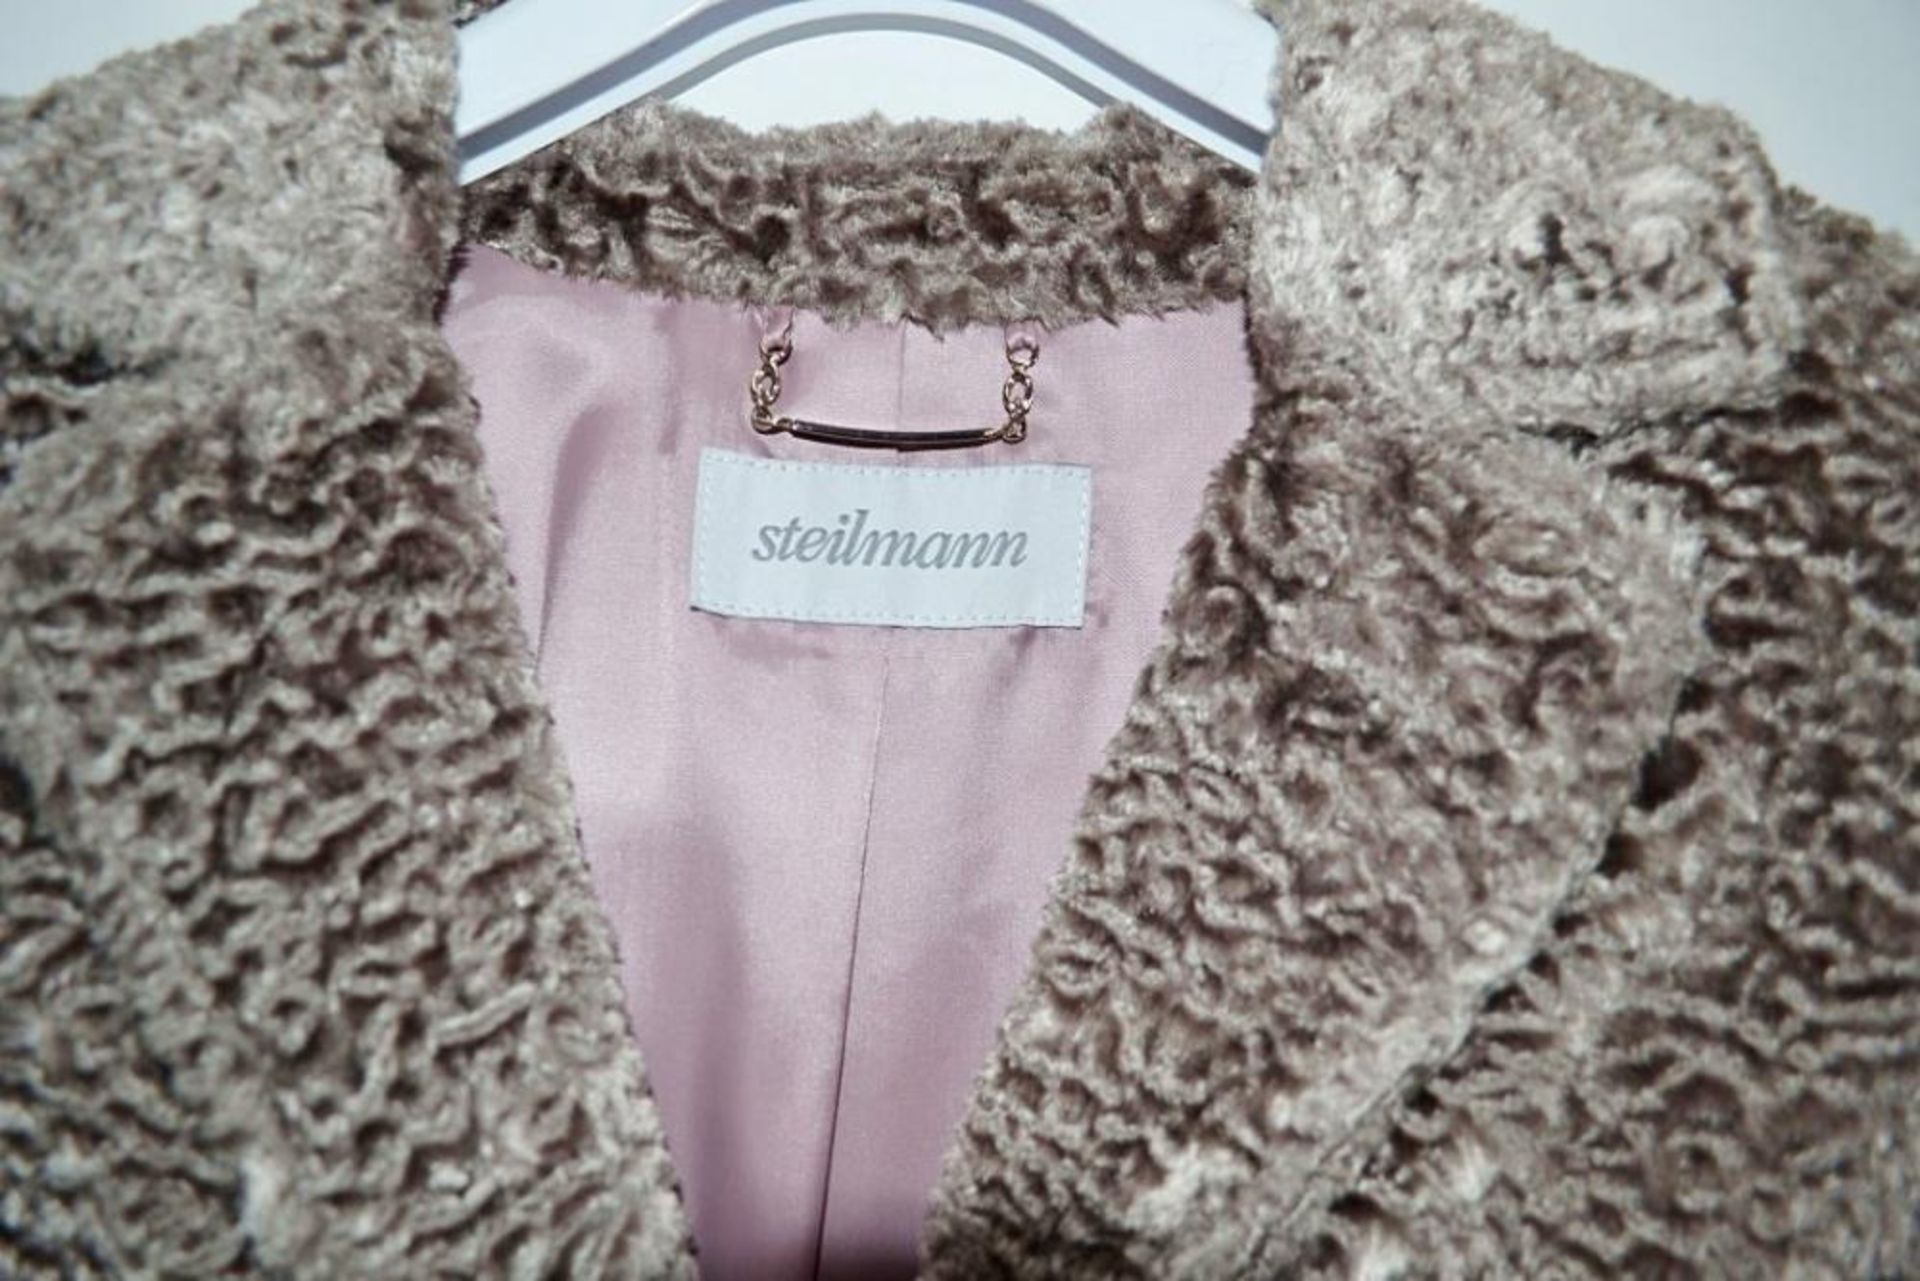 1 x Steilmann Womens Vintage-Style Faux Fur Winter Coat - Colour: Mocha - Size 12 - CL210 - New Samp - Image 2 of 4